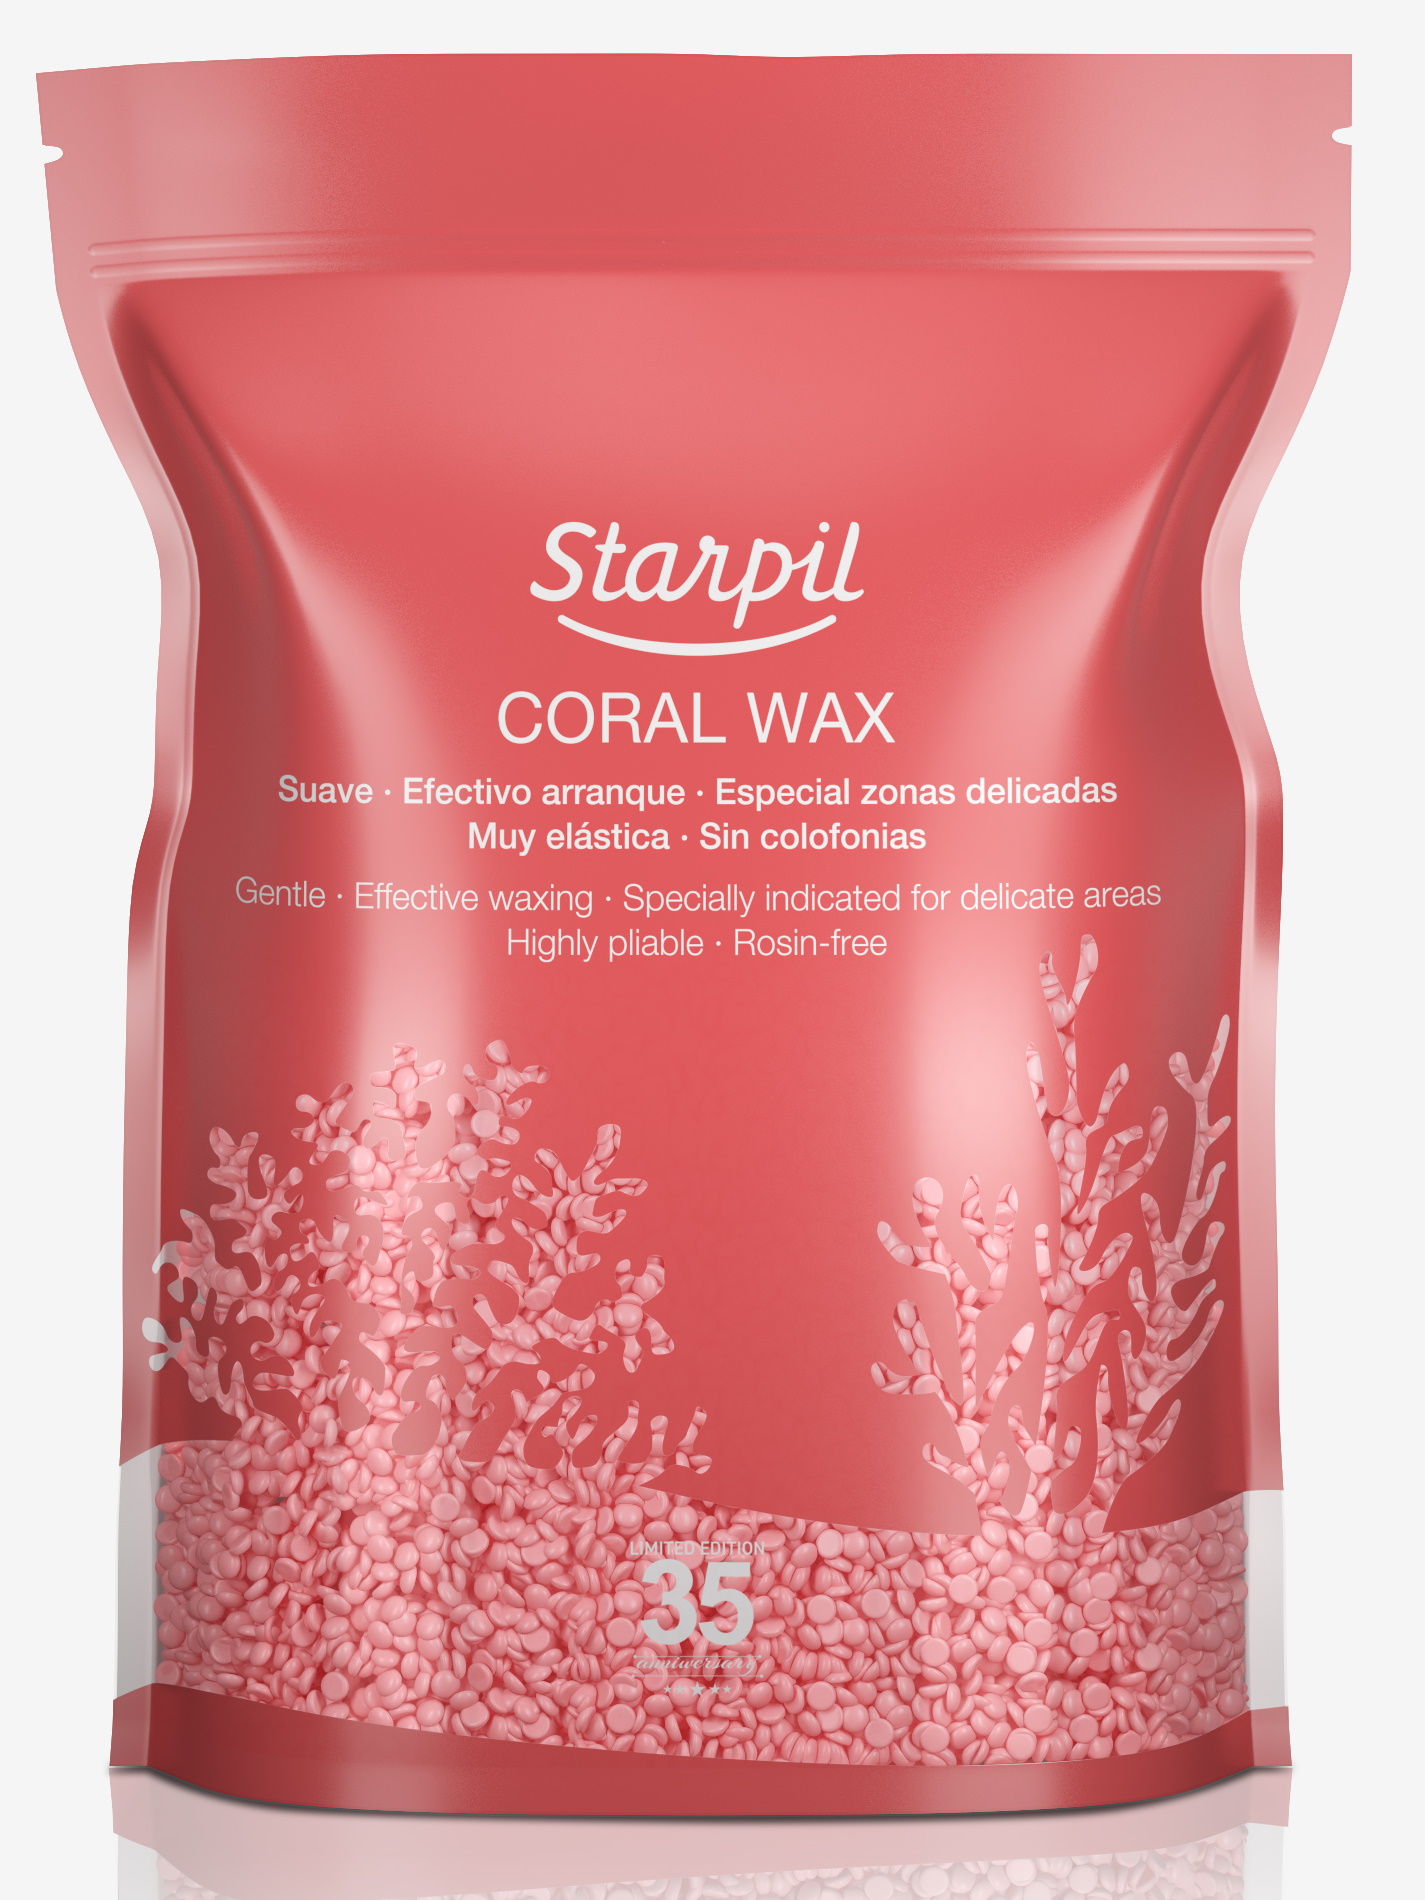 Воск для депиляции STARPIL коралл/coral wax 1000 г